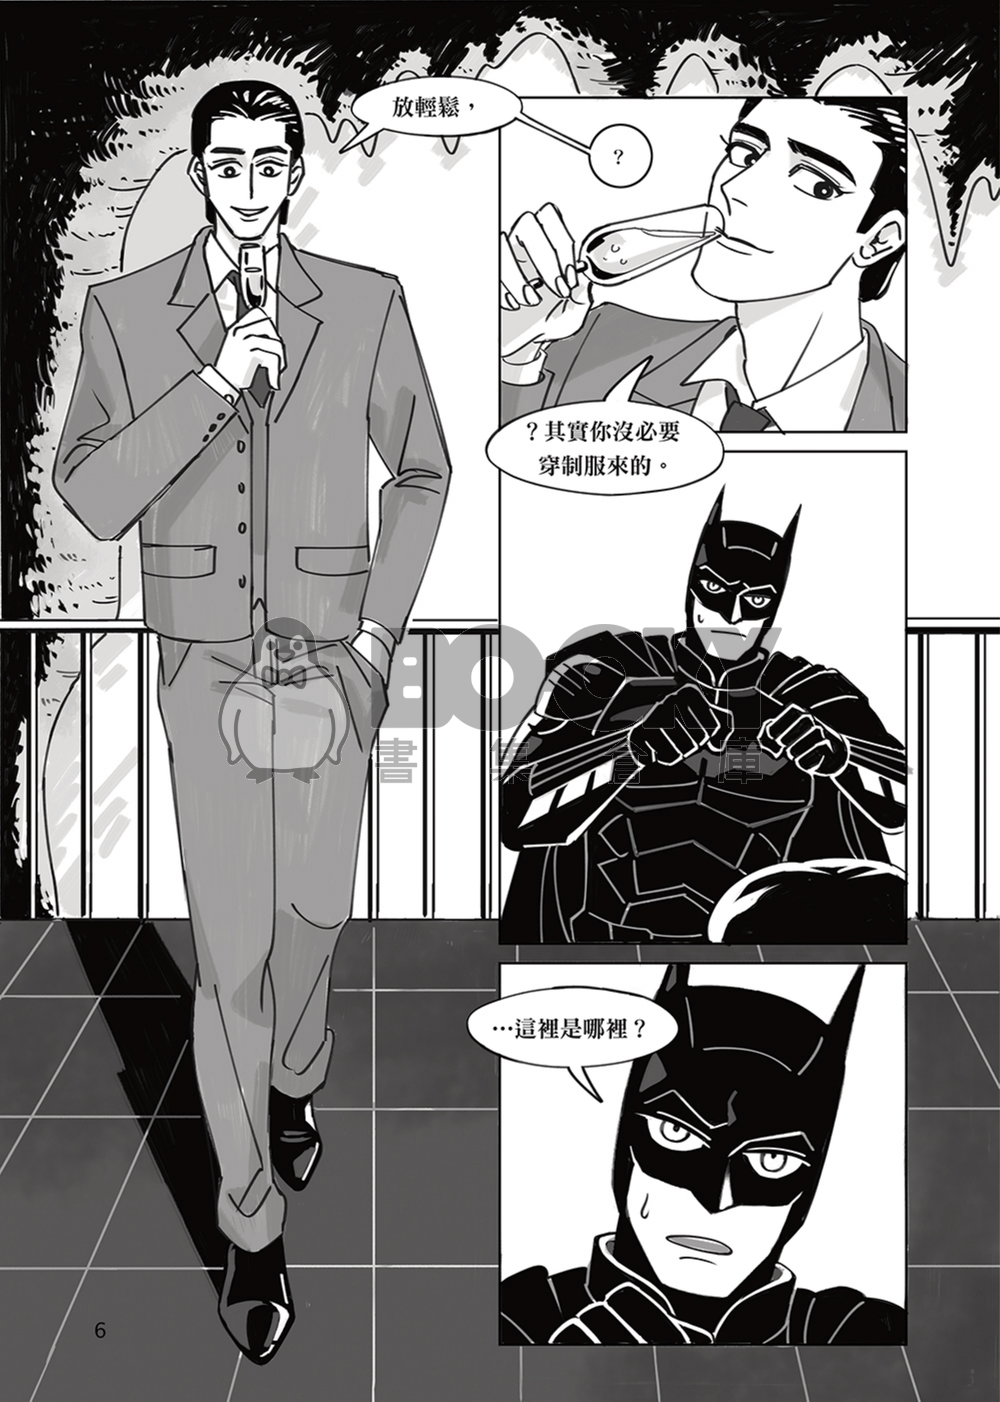 【超蝙】蝙蝠俠派對！？ 試閱圖片